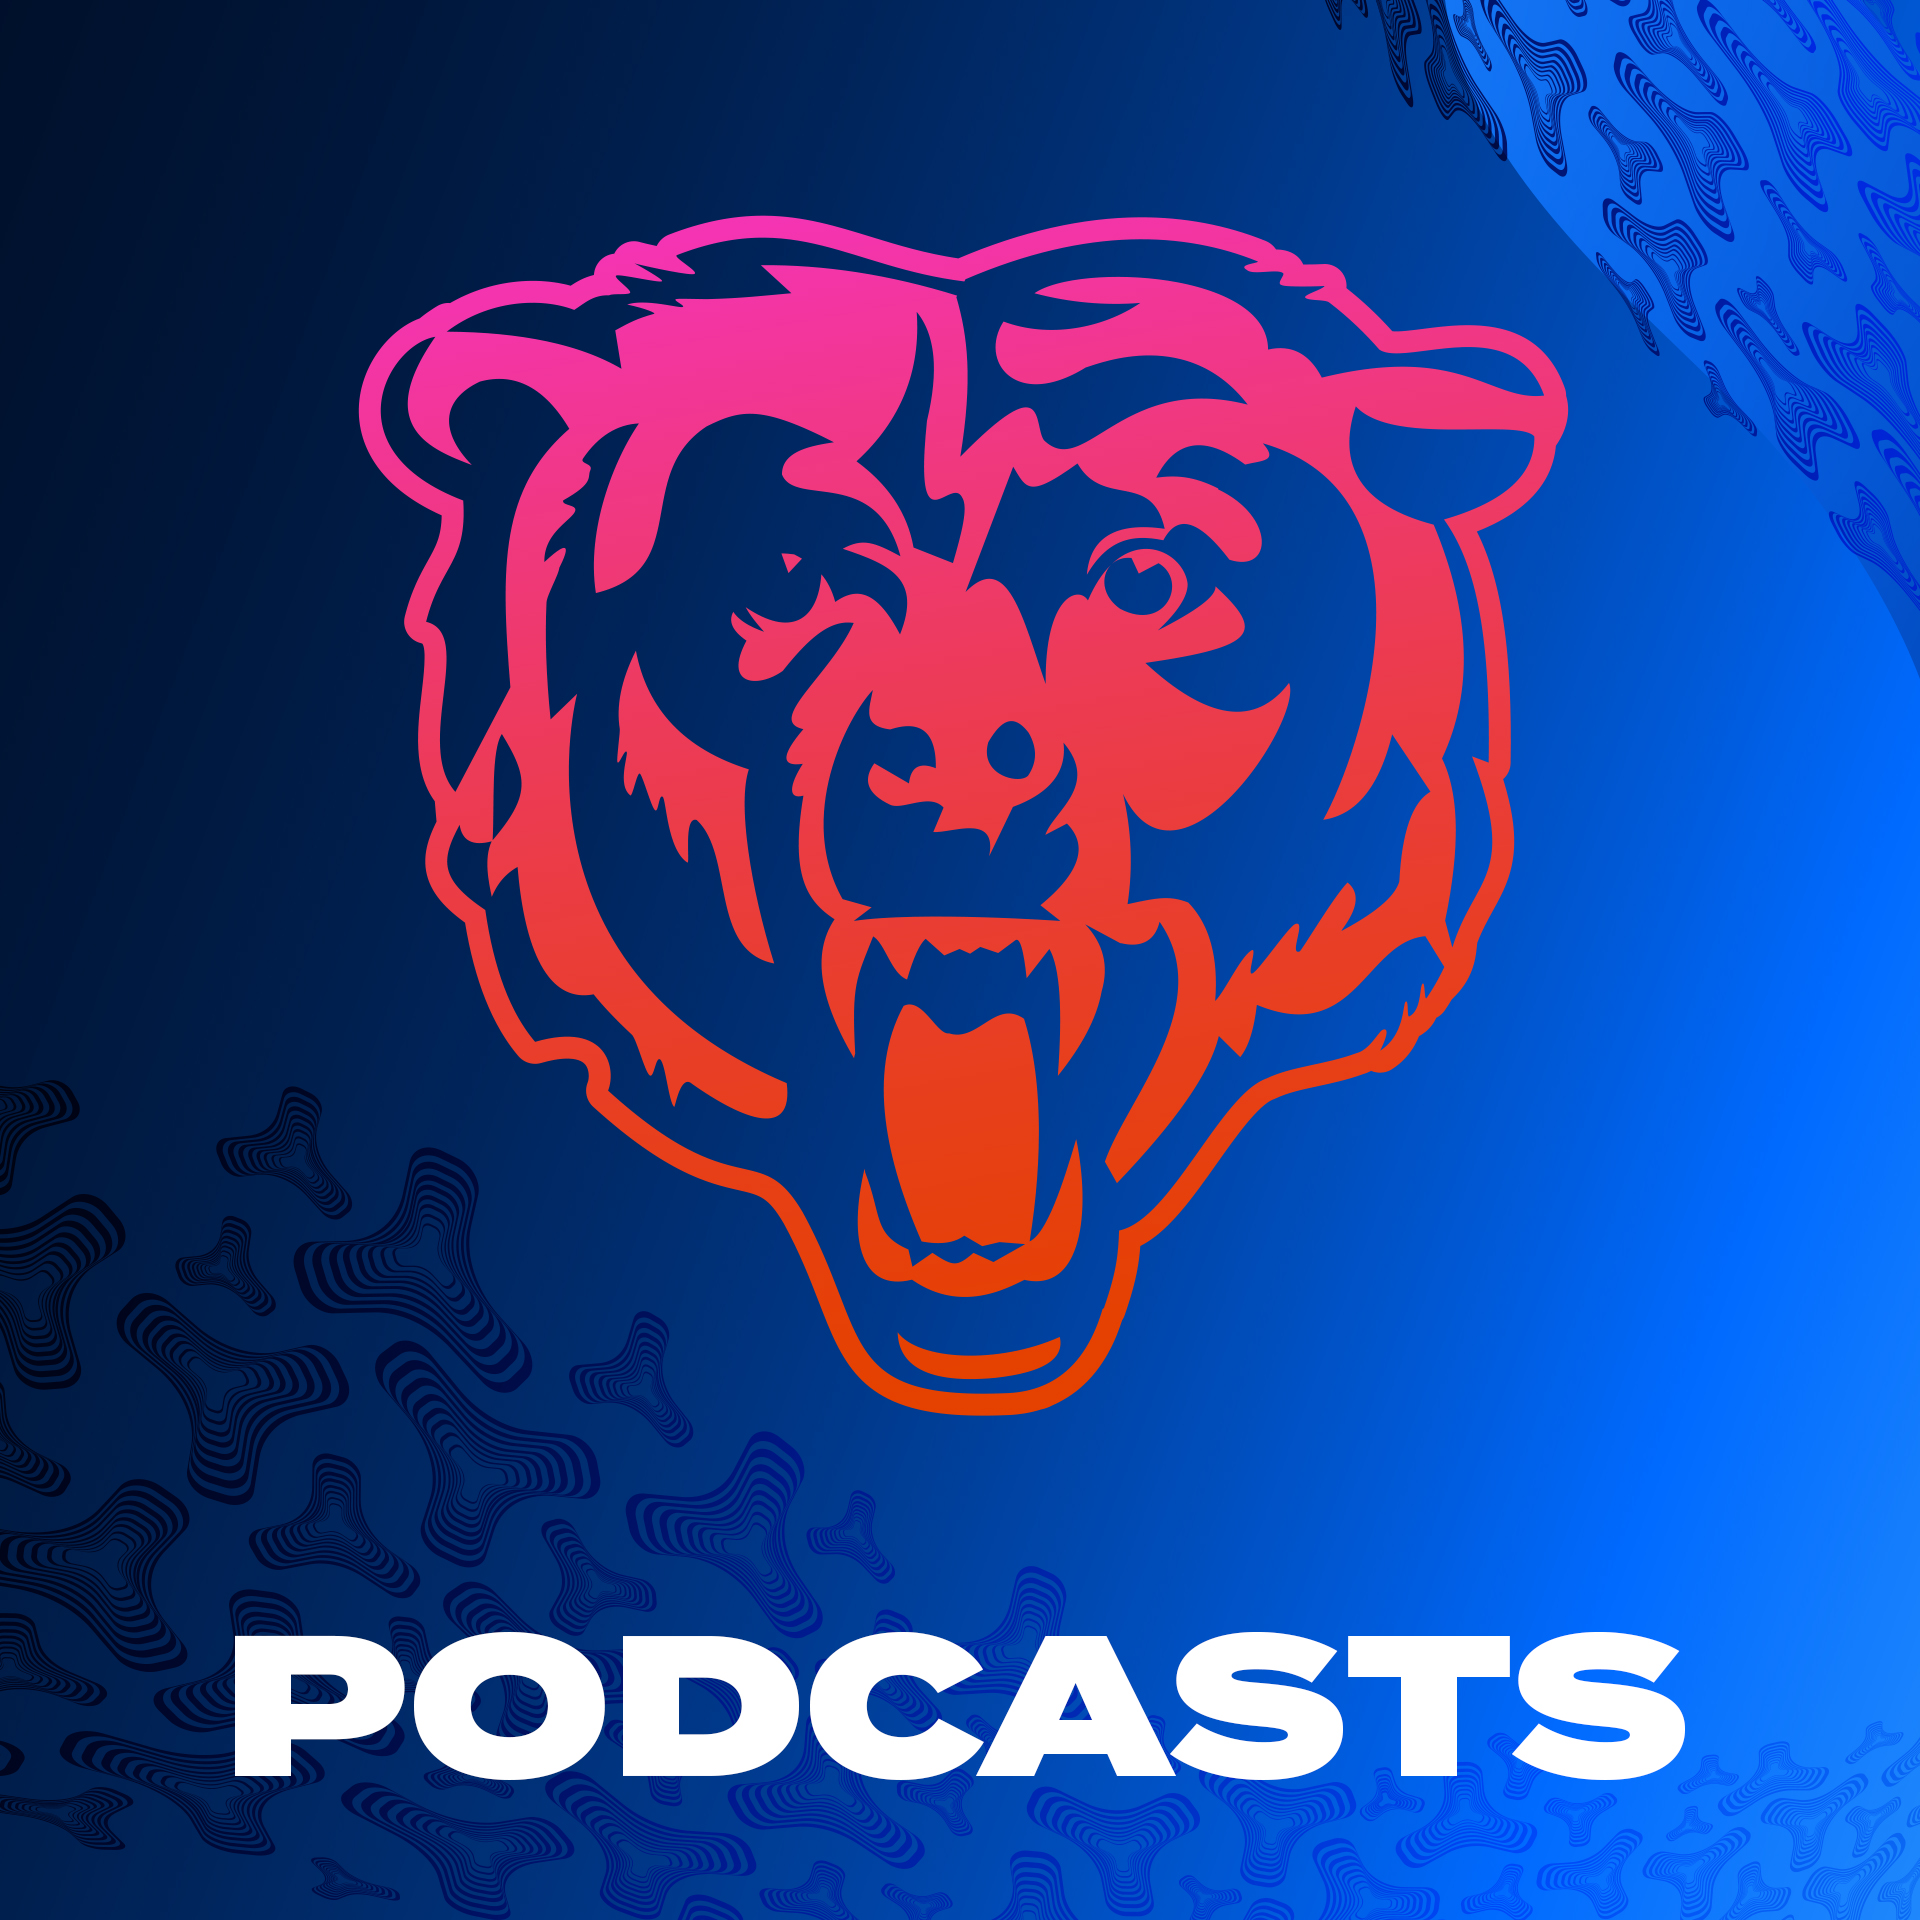 Matt Miller praises Bears' top Draft picks, Williams and Odunze interviews | Bears Weekly Podcast